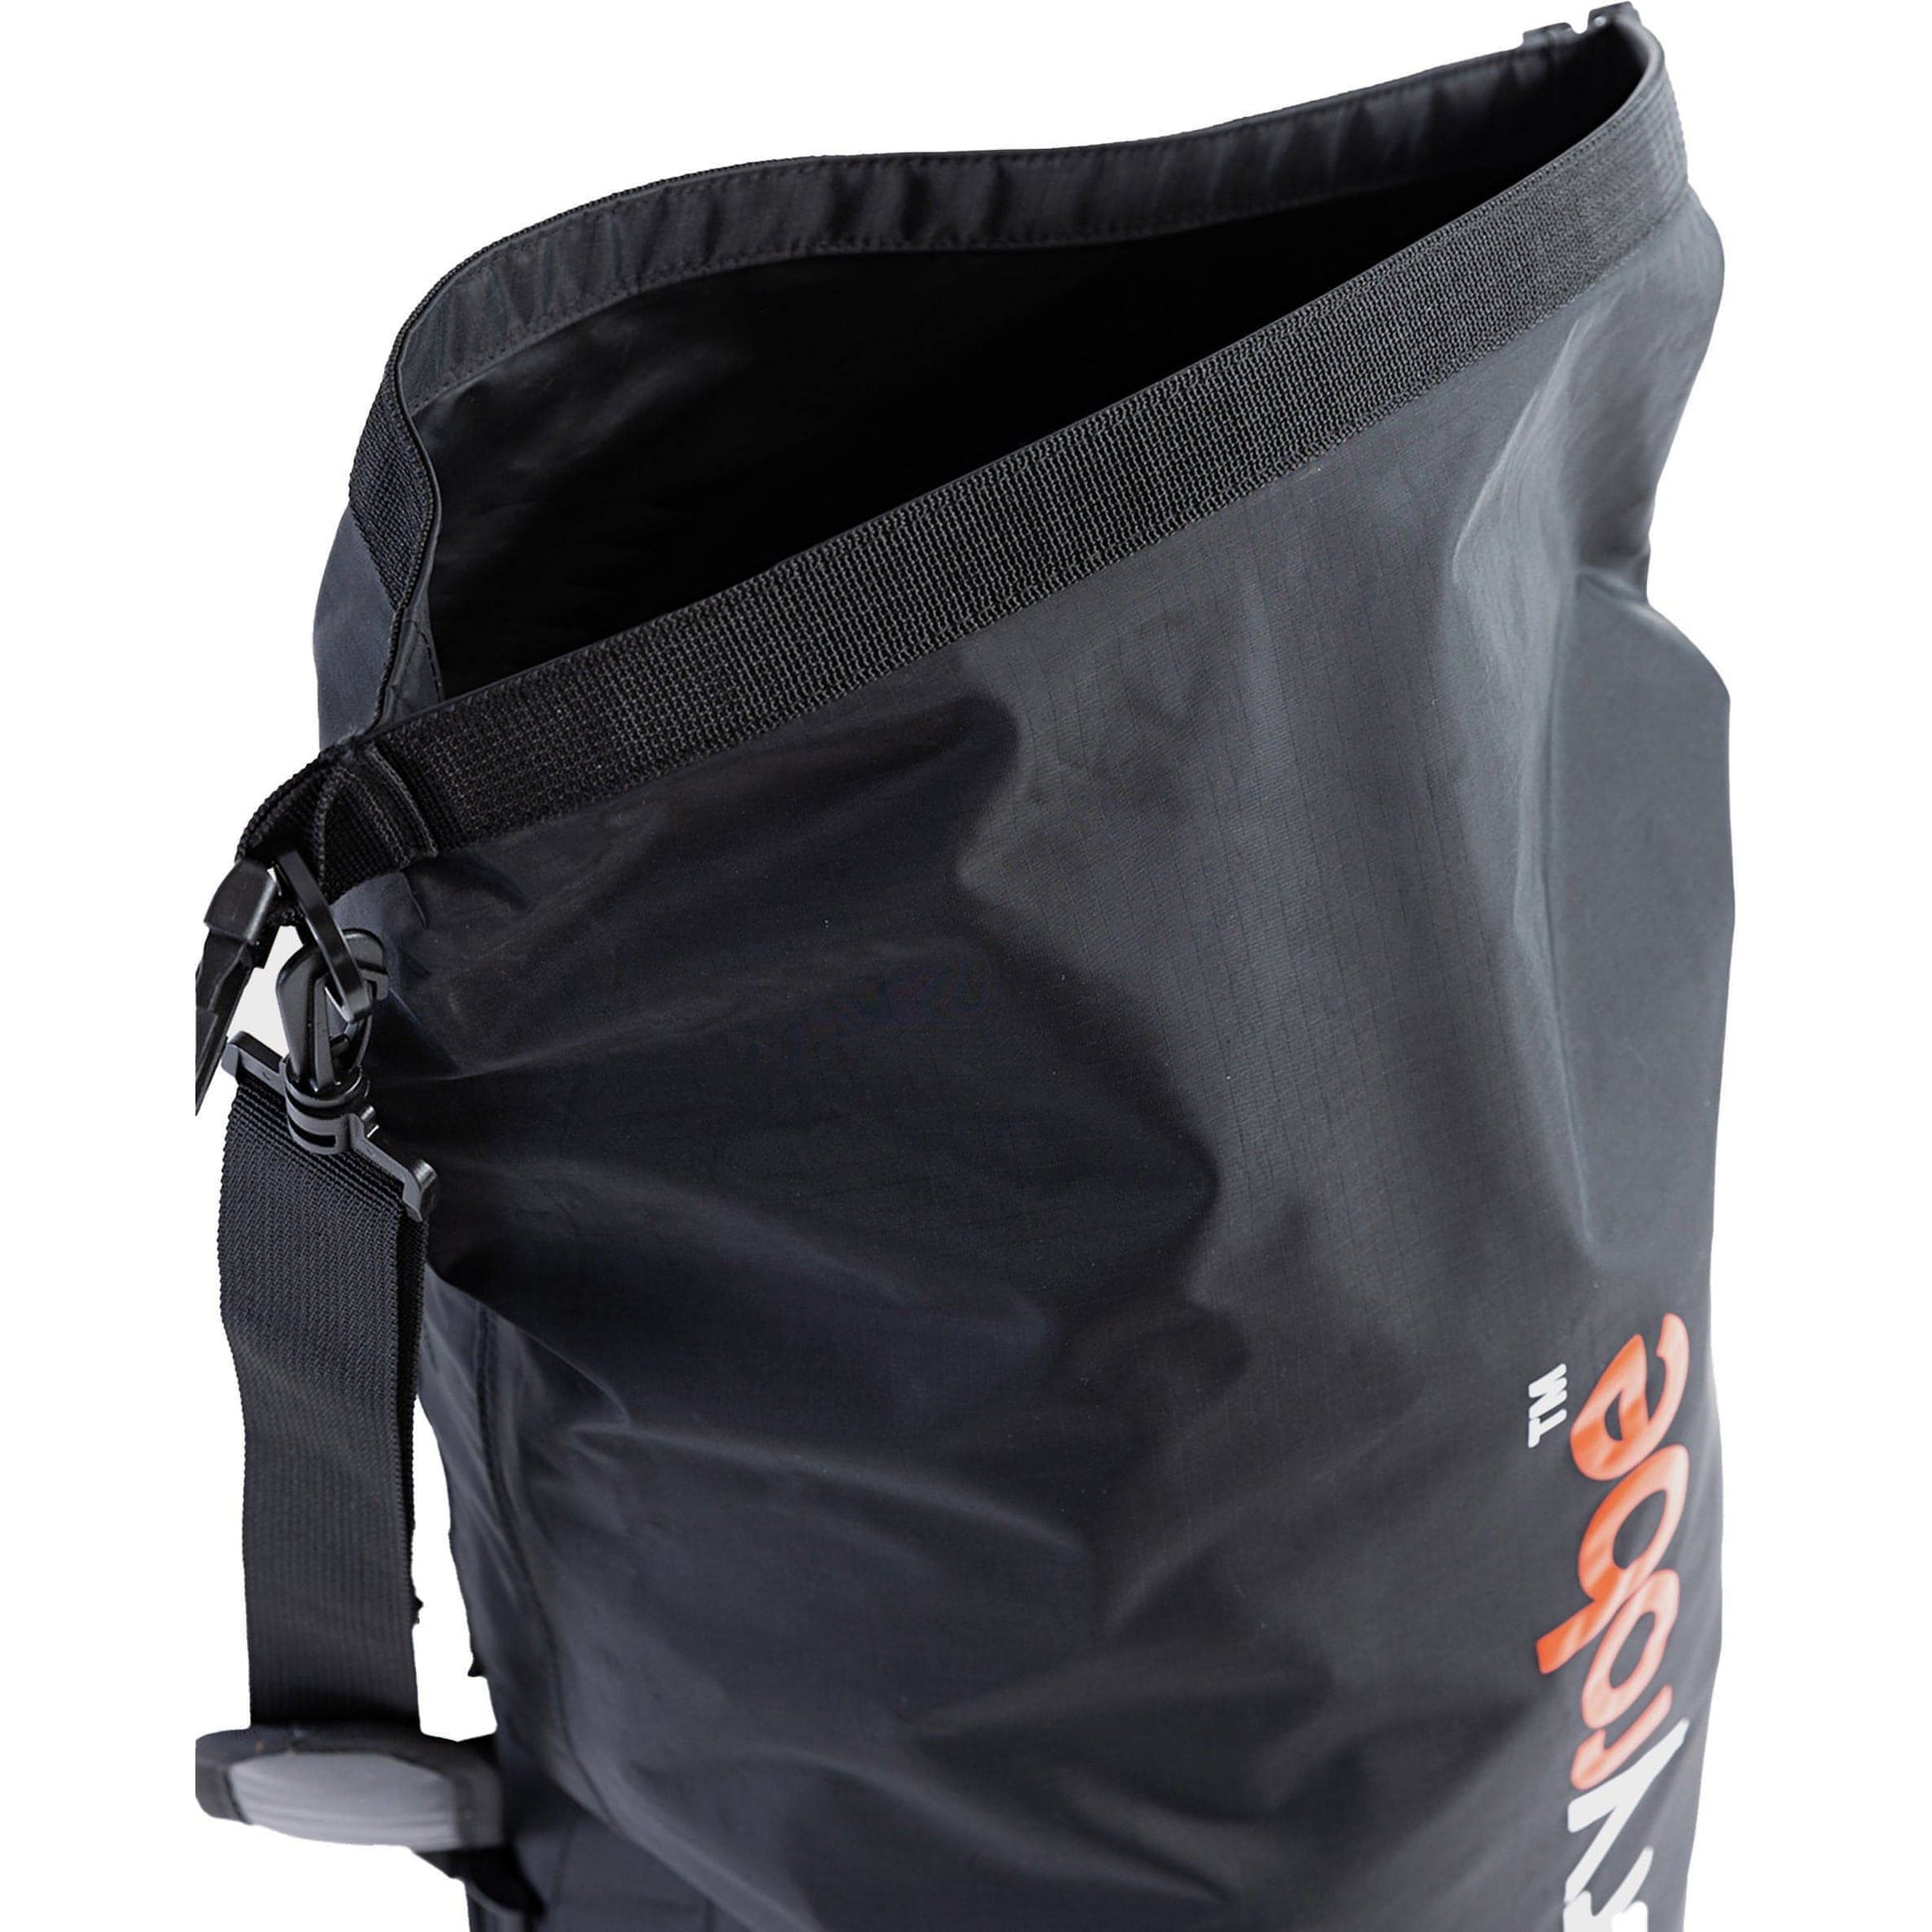 Dryrobe Compression Bag Details